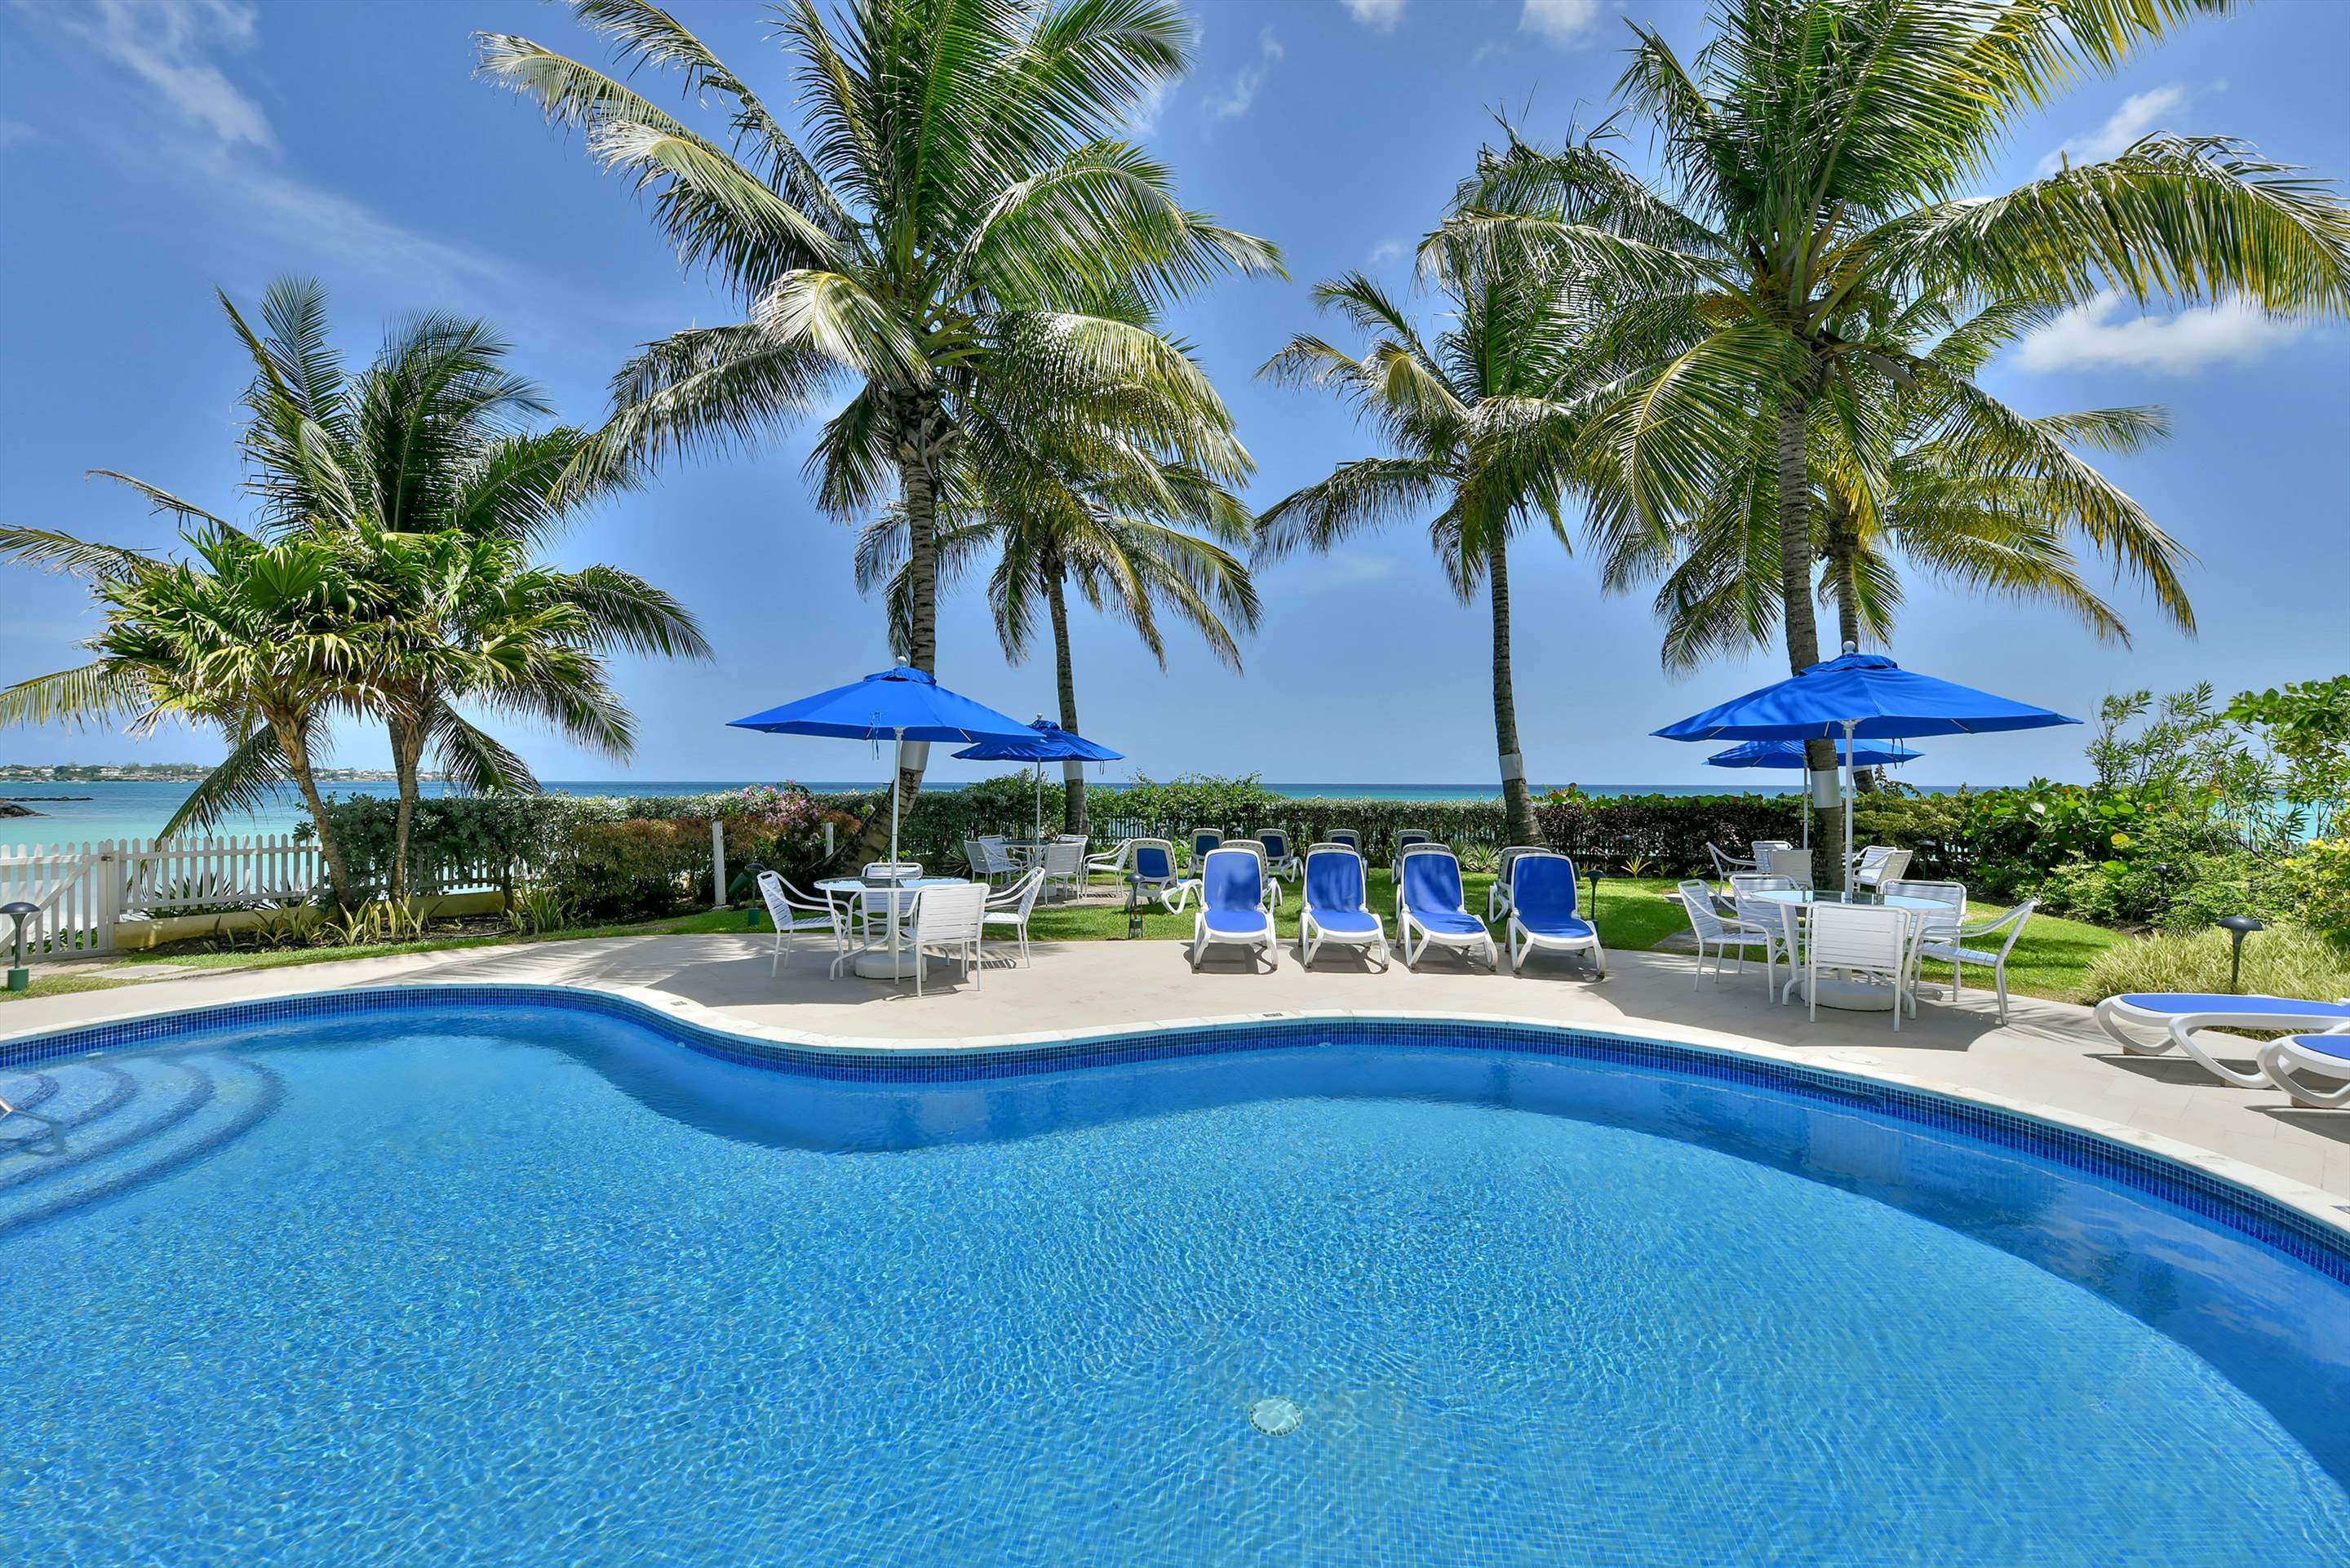 Maxwell Beach Villas 503, 2 bedroom, 2 bedroom villa in St. Lawrence Gap & South Coast, Barbados Photo #1